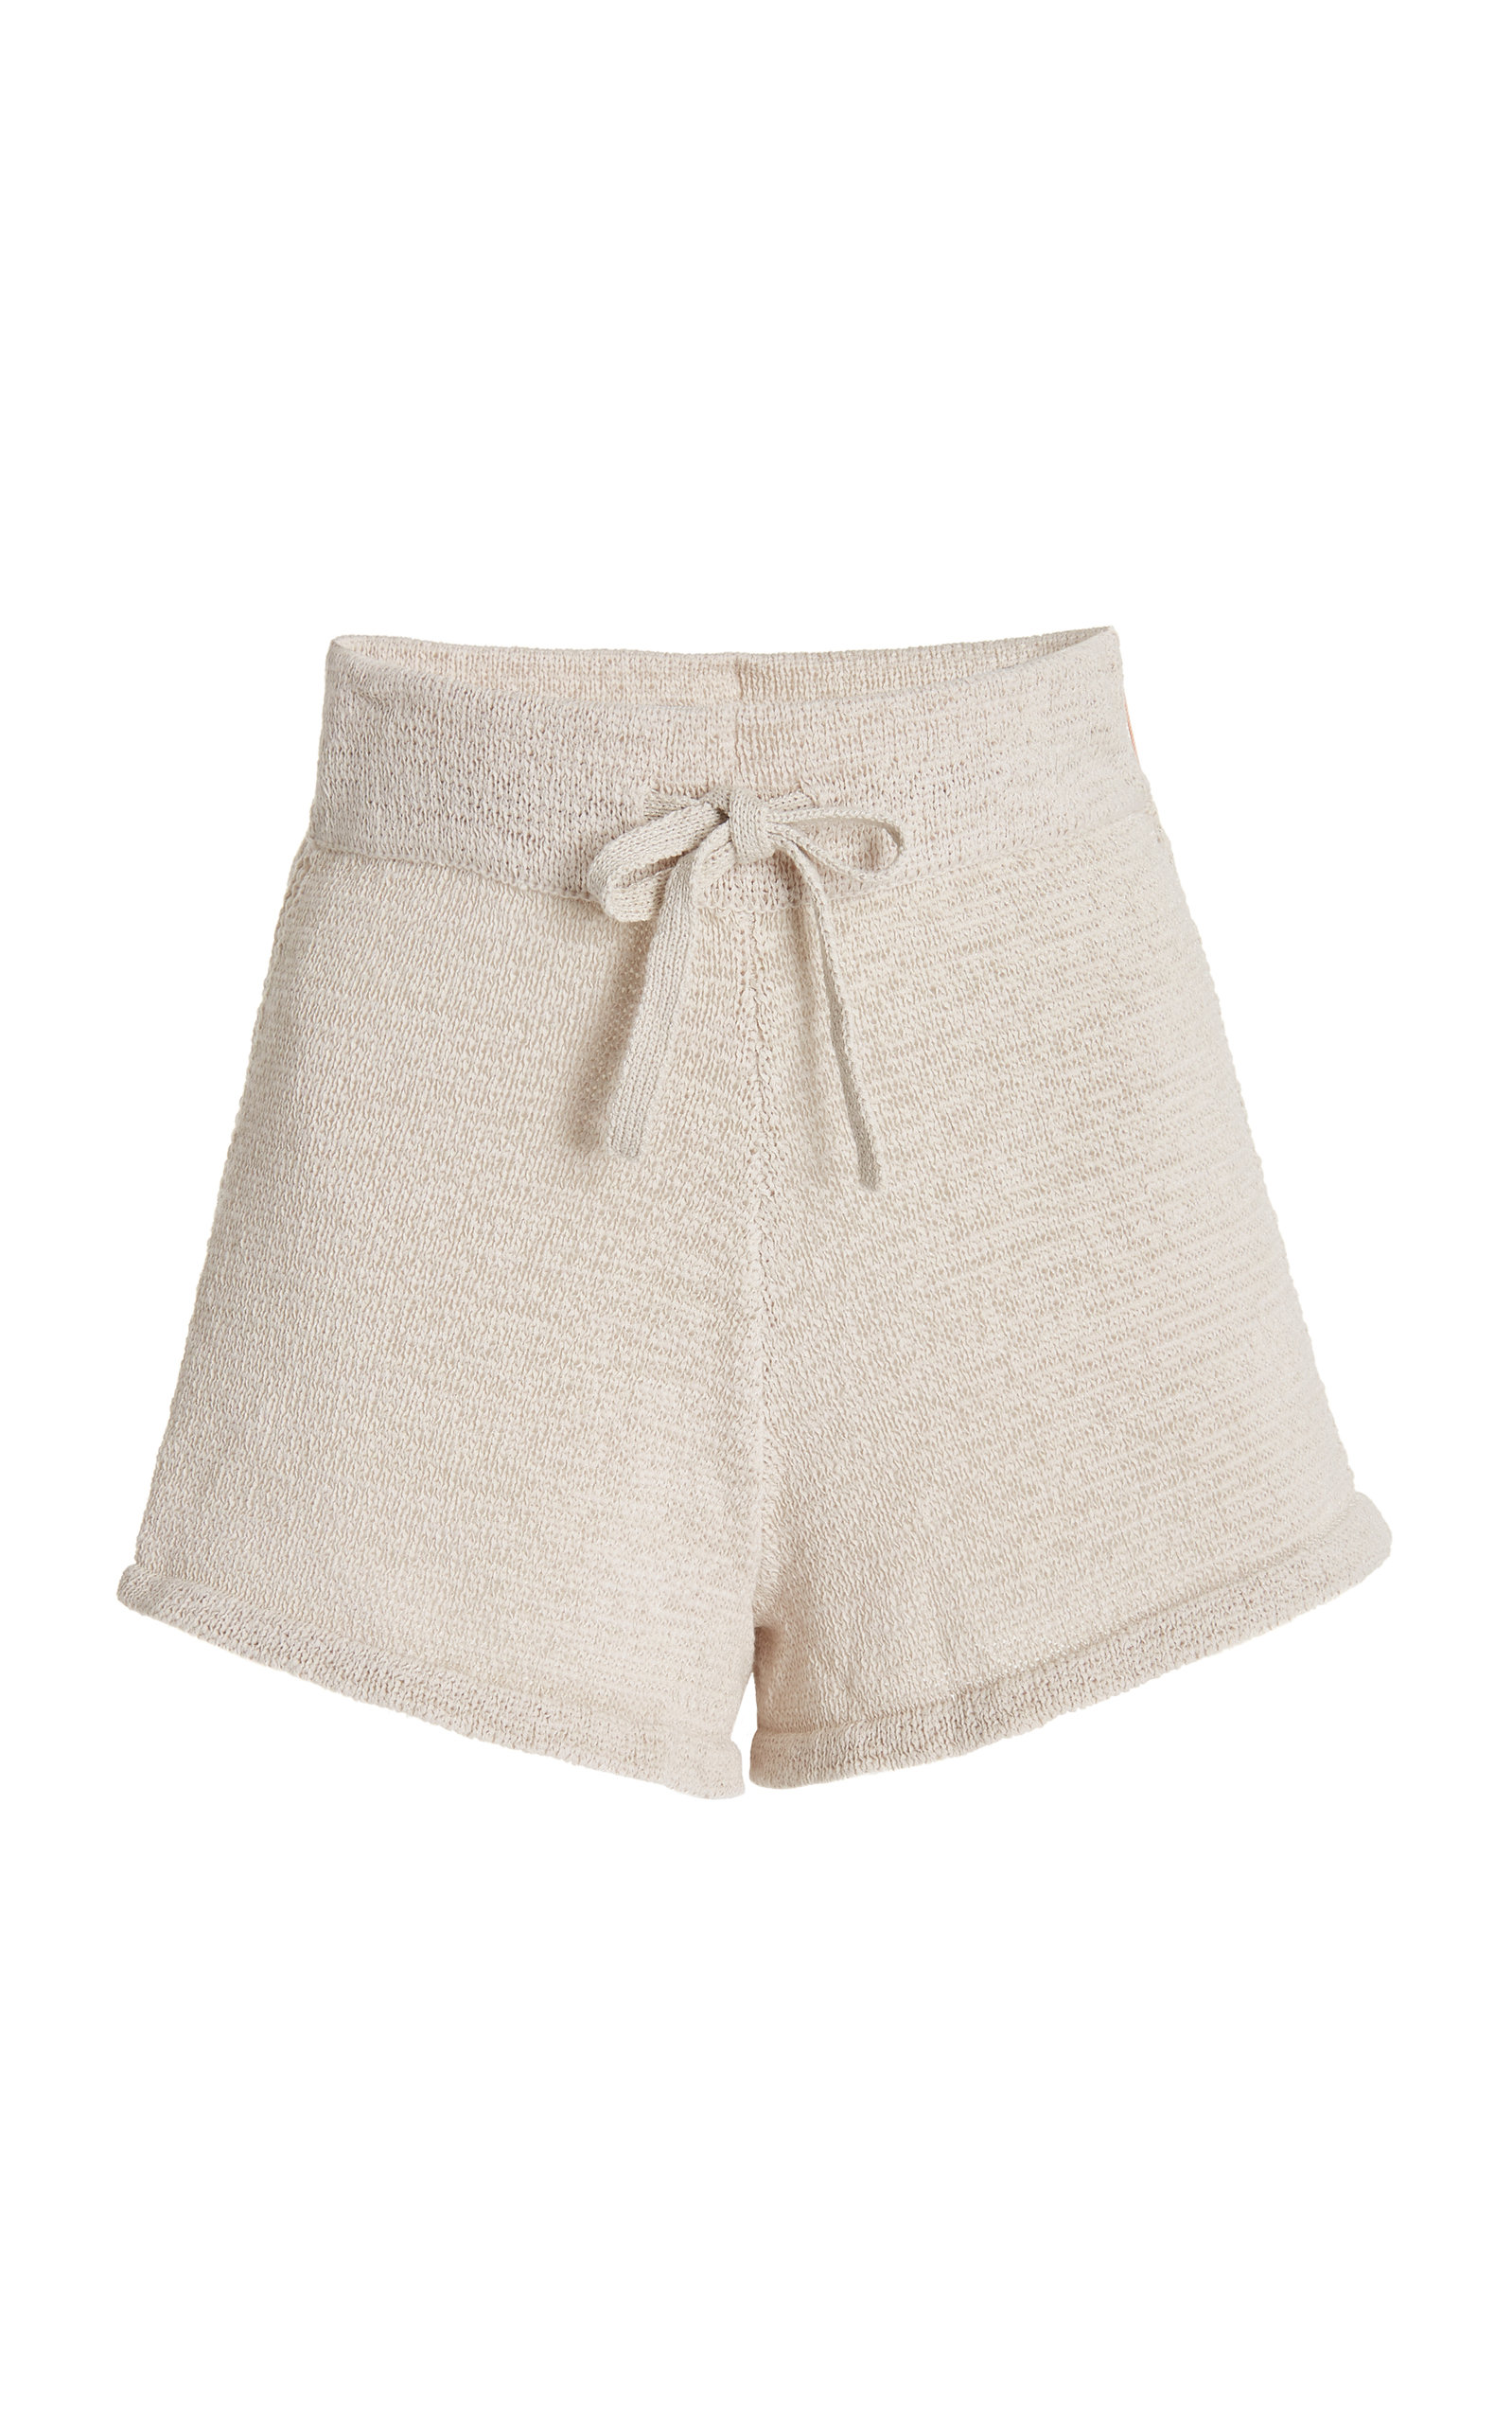 Cult Gaia Women's Mikeah Cotton-Blend Knit Shorts